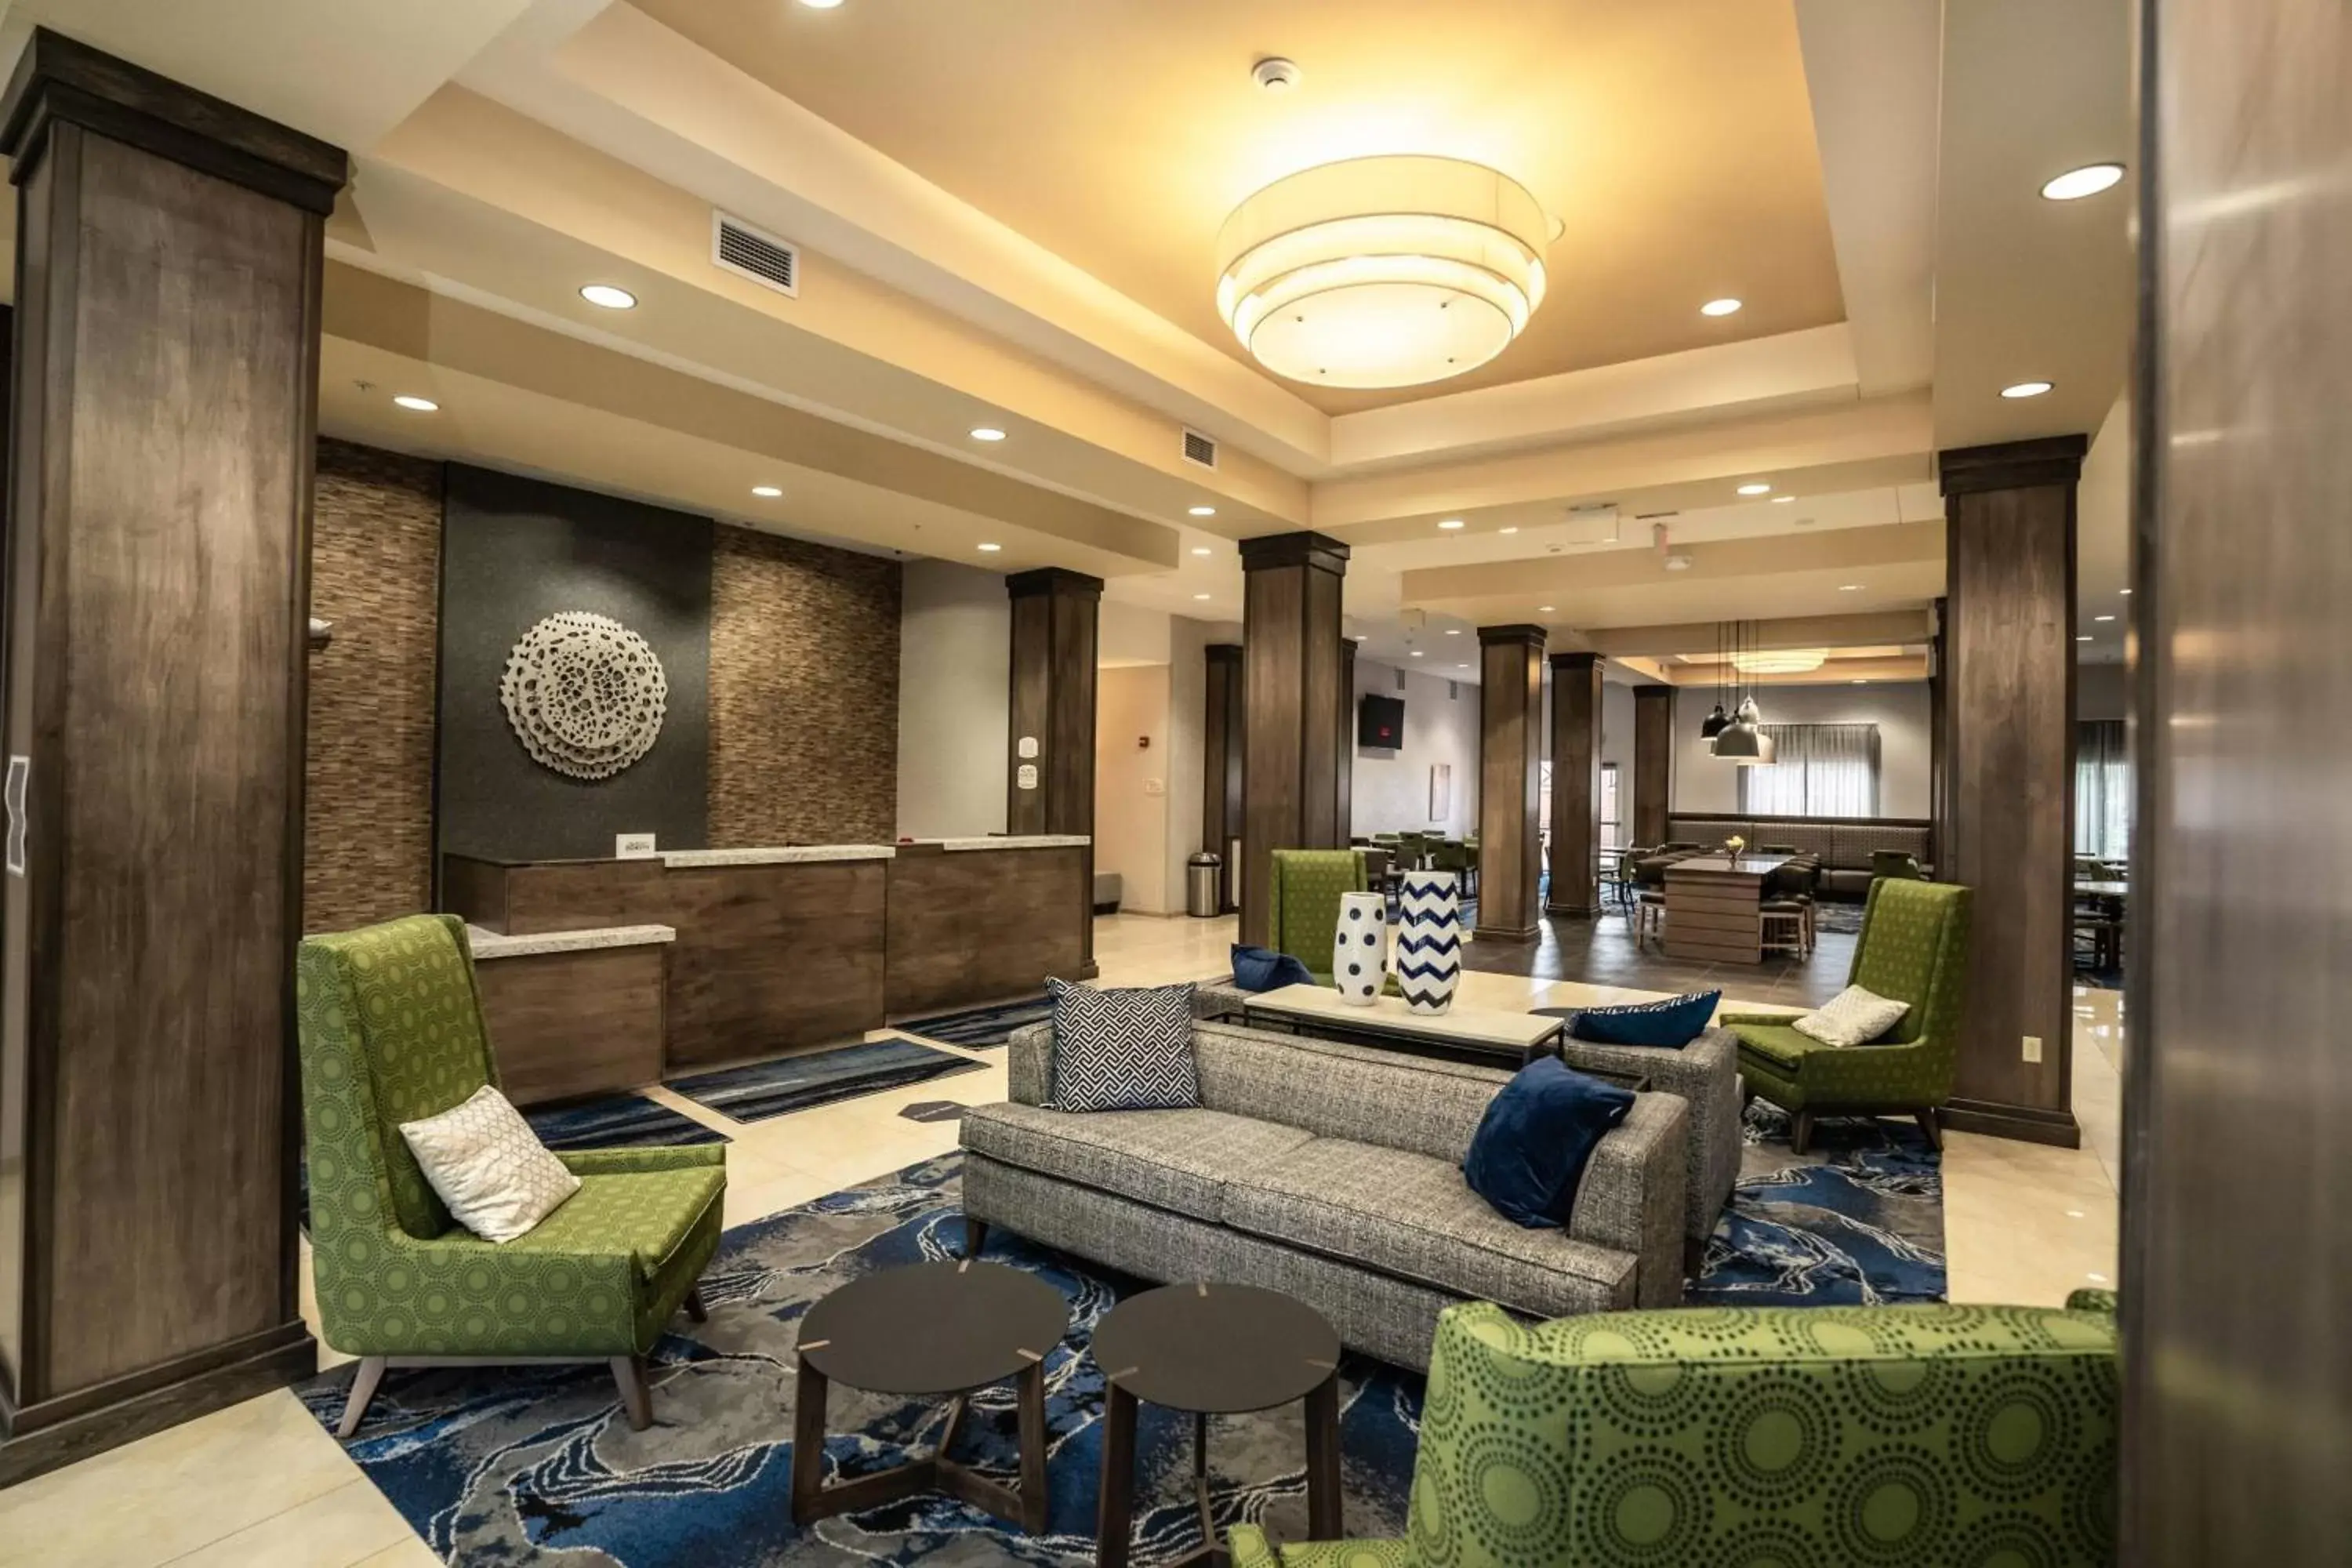 Lobby or reception, Lobby/Reception in Fairfield Inn & Suites by Marriott Kearney